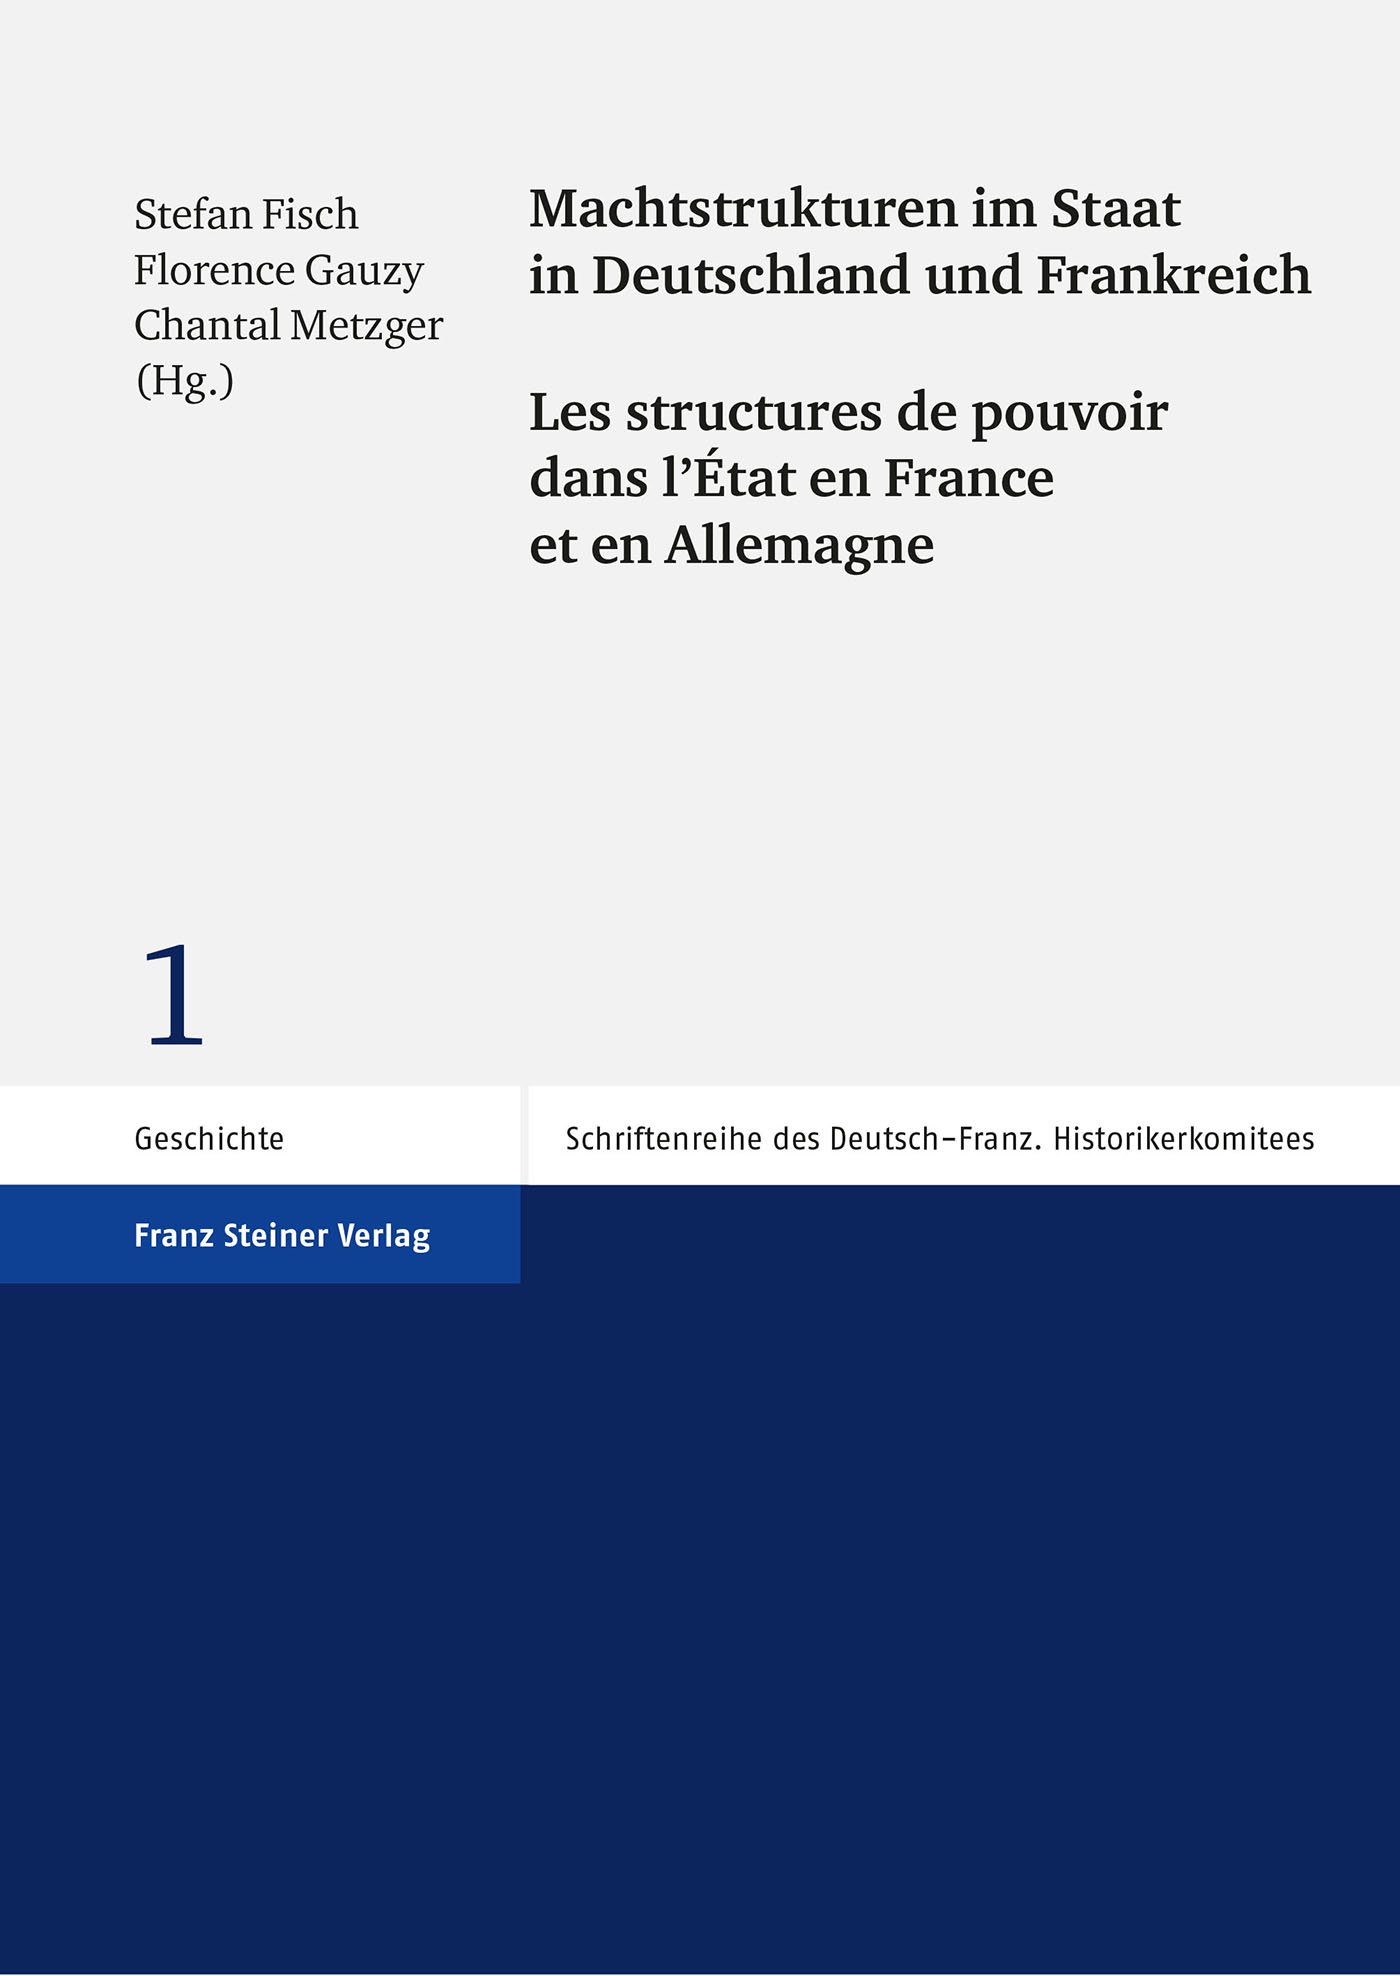 Machtstrukturen im Staat in Deutschland und Frankreich / Les structures de pouvoir dans l’État en France et en Allemagne